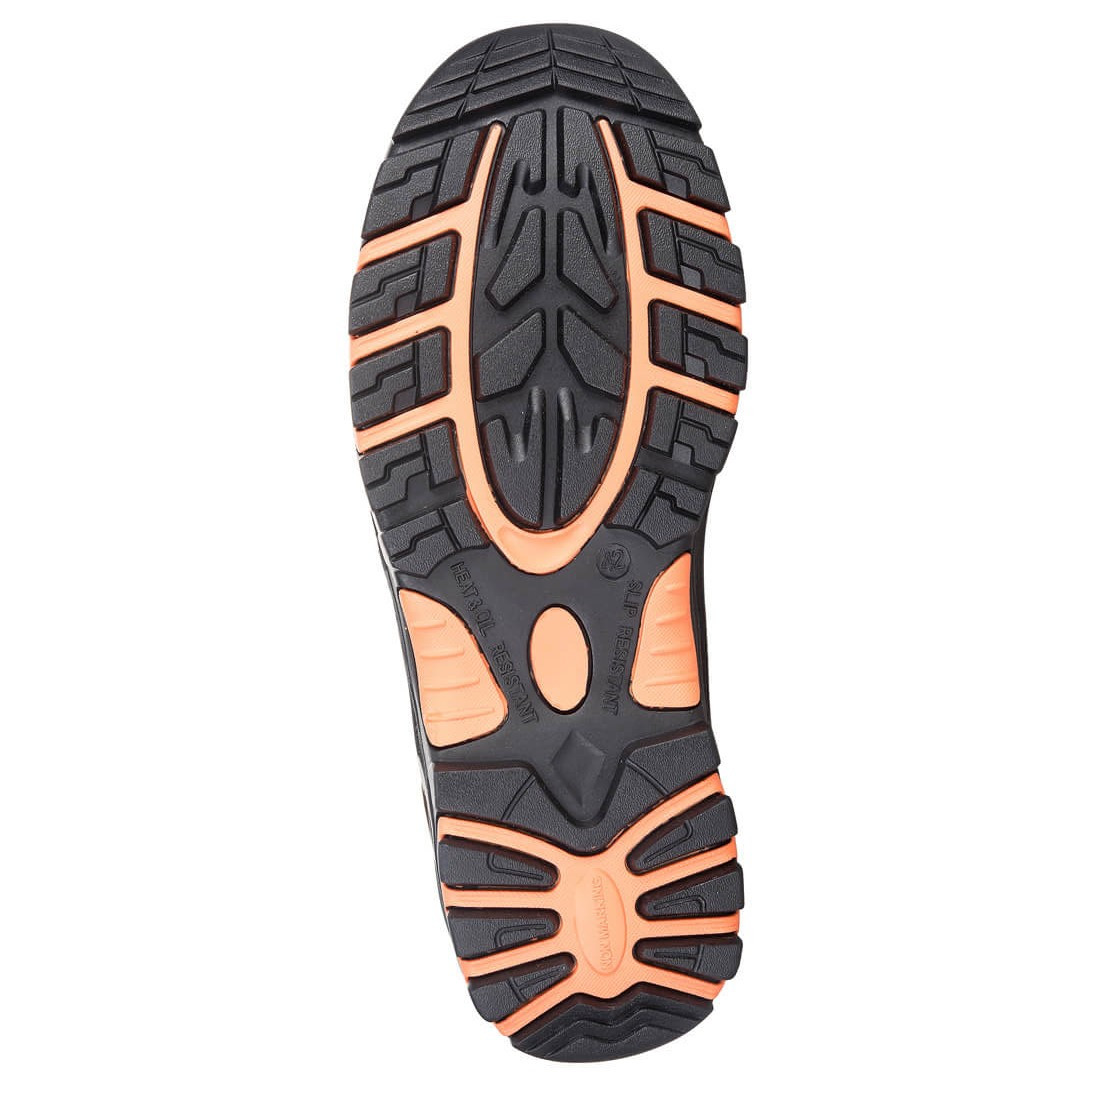 Bocanci Portwest Composite, Montana Hiker S3 - Incaltaminte de protectie | Bocanci, Pantofi, Sandale, Cizme